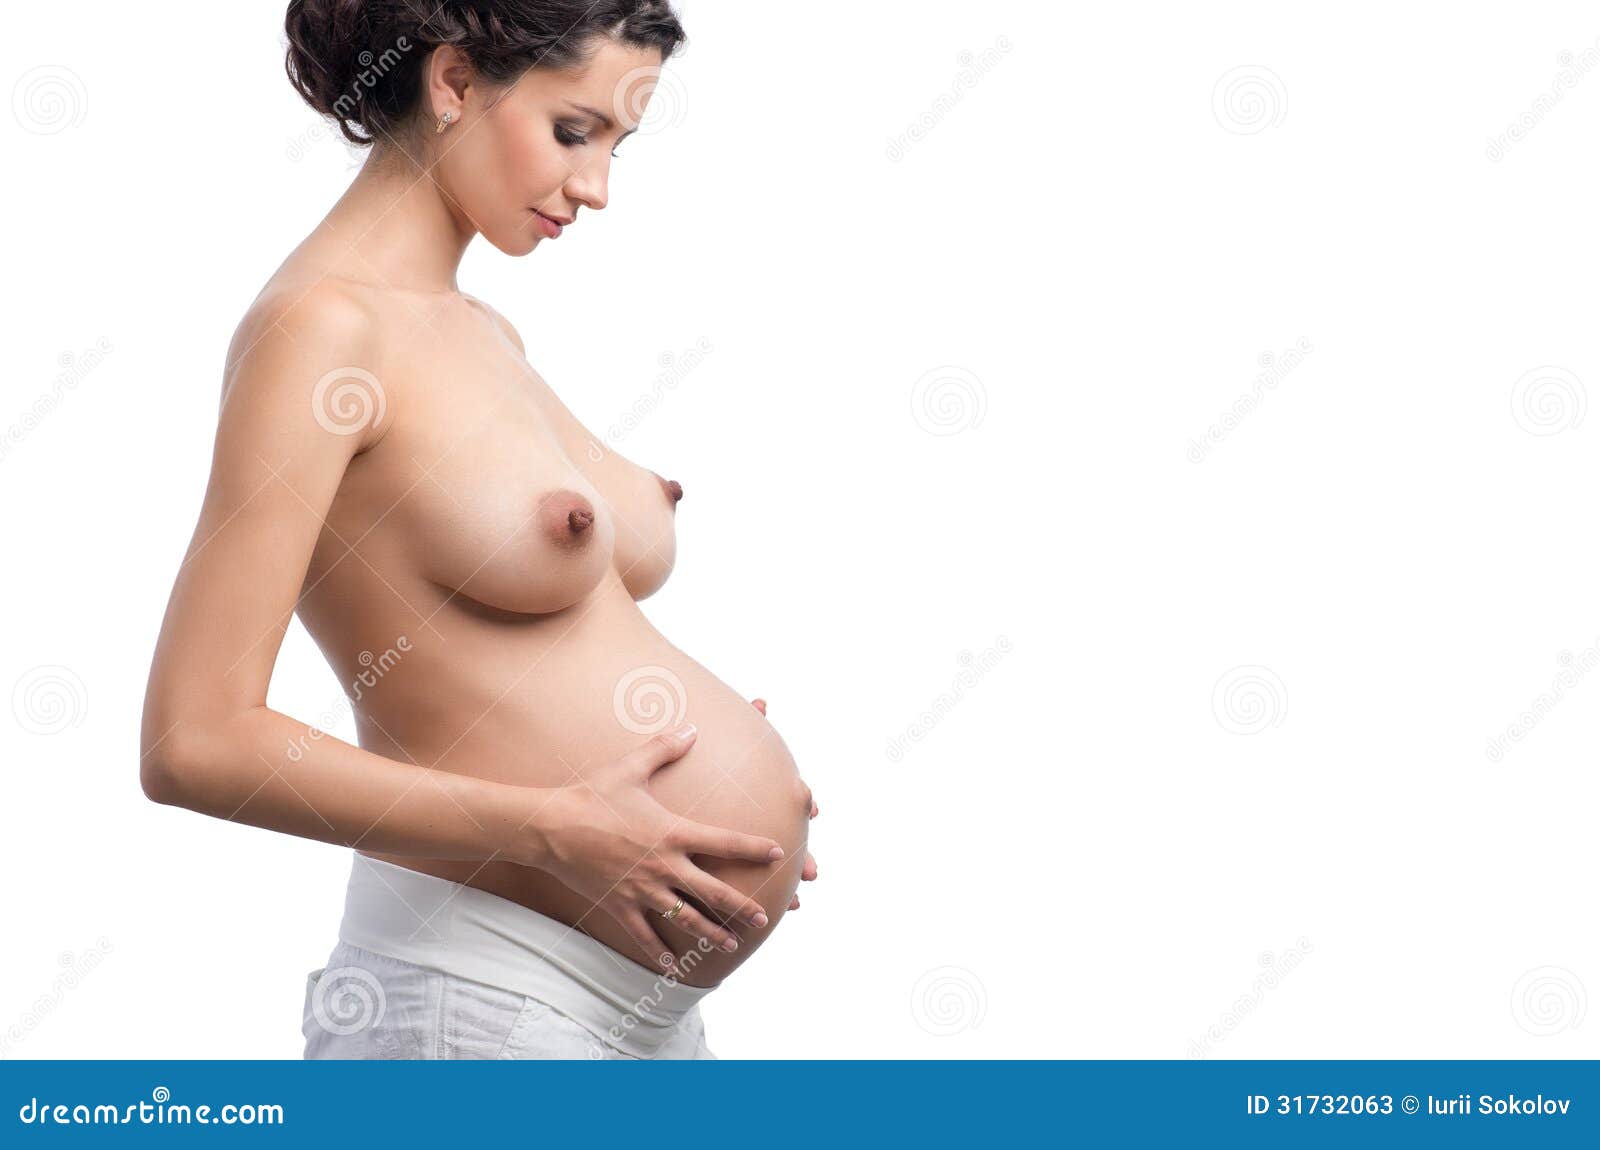 я беременна грудь не меняется фото 117